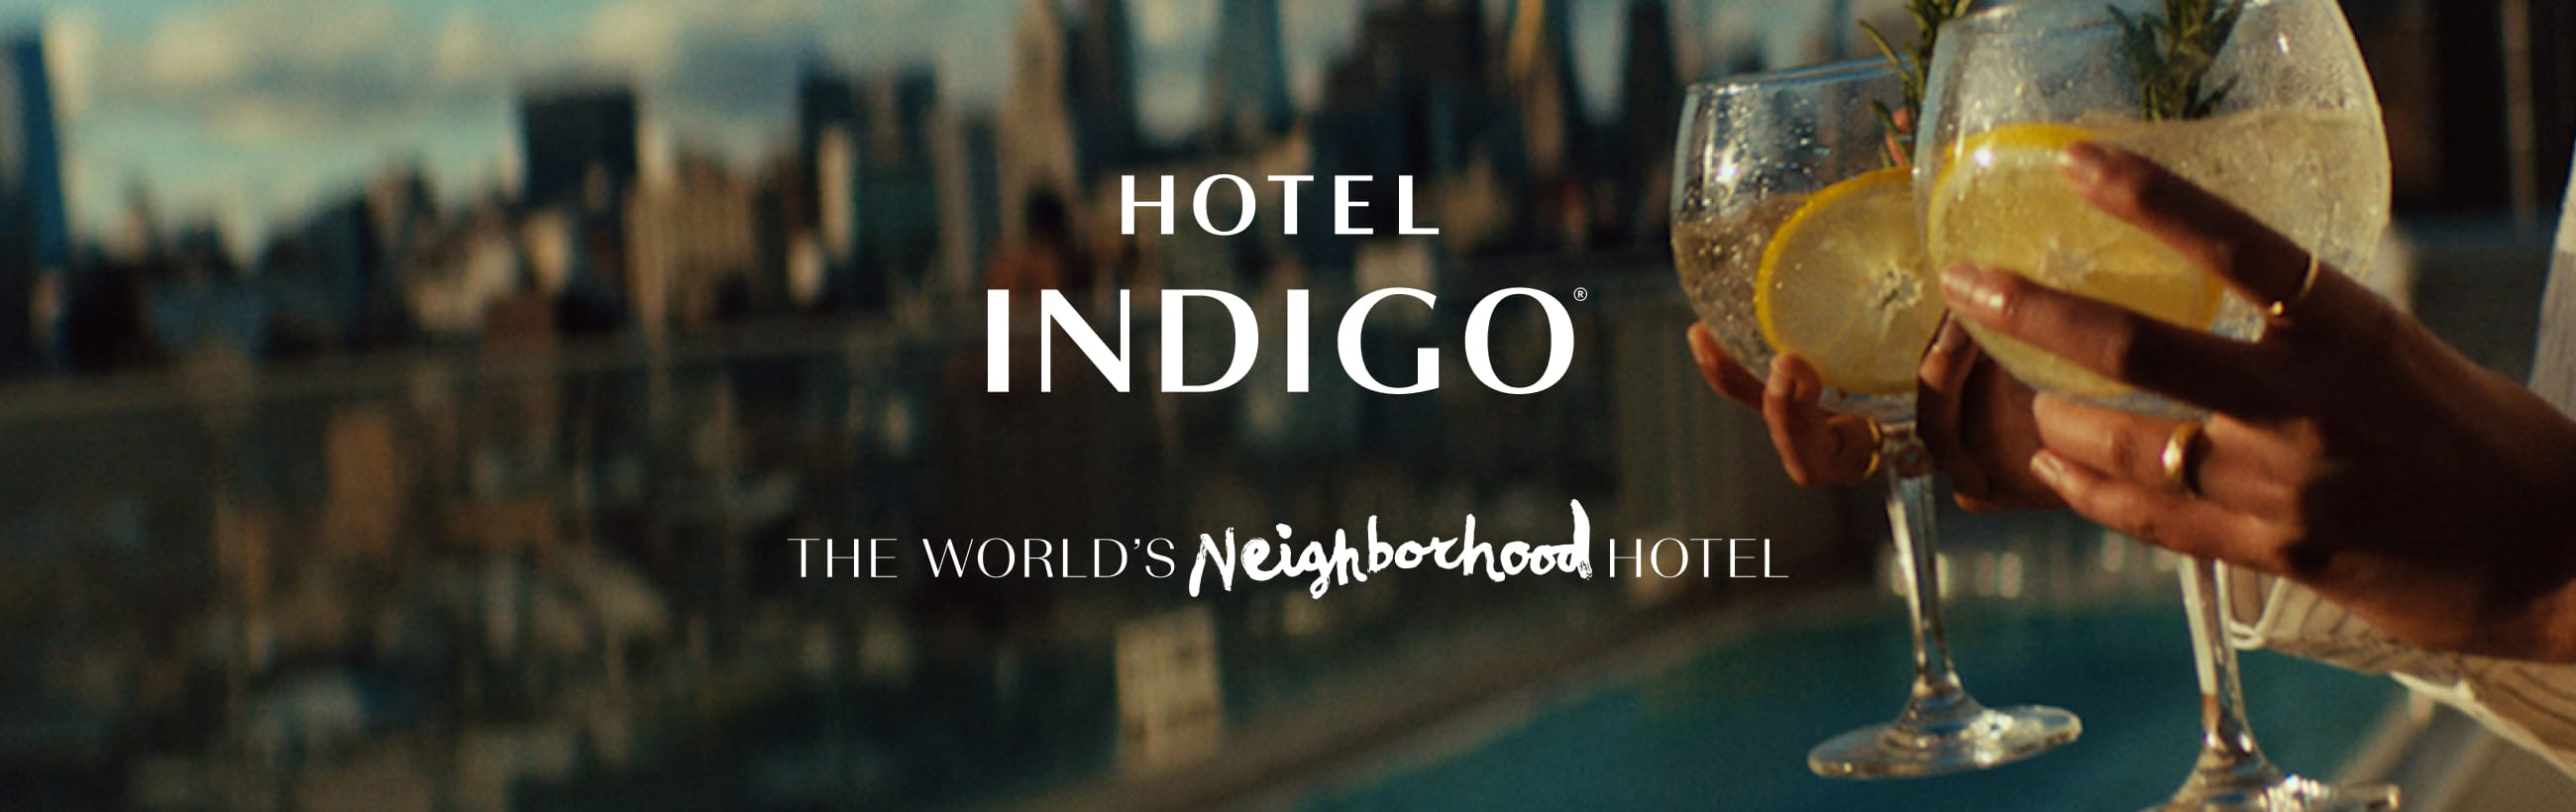 Hotel Indigo banner